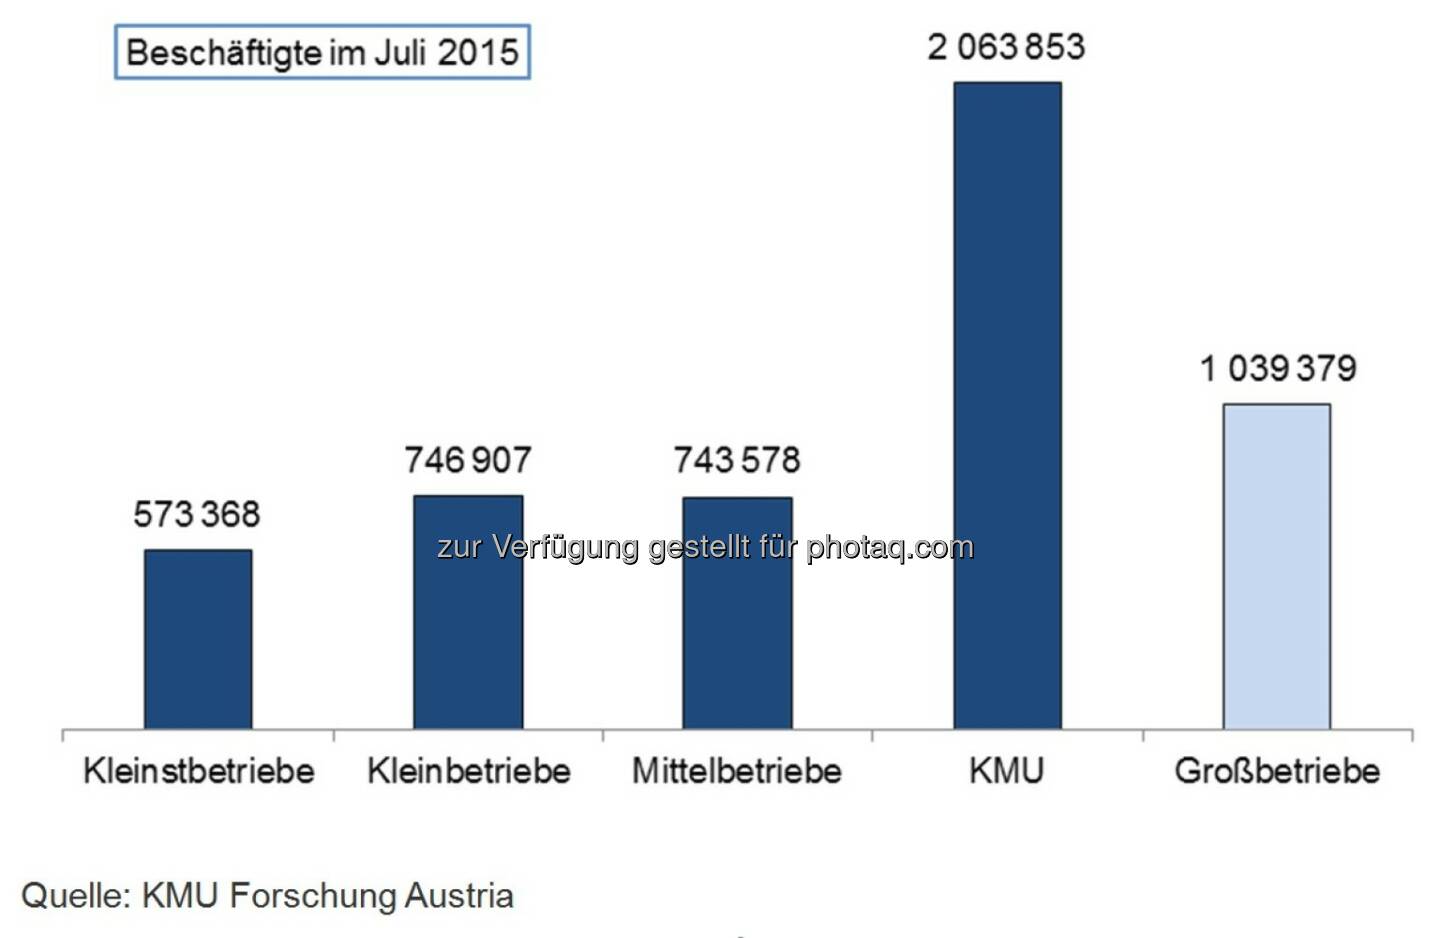 Beschäftigte im Juli 2015 - Kleinstbetriebe, Kleinbetriebe, Mittelbetriebe, KMU und Großbetriebe : Beschäftigungsrekord in KMU : Mehr als 2 Millionen Arbeitsplätze in den kleinen und mittleren Unternehmen Österreichs : Fotocredit: KMU Forschung Austria